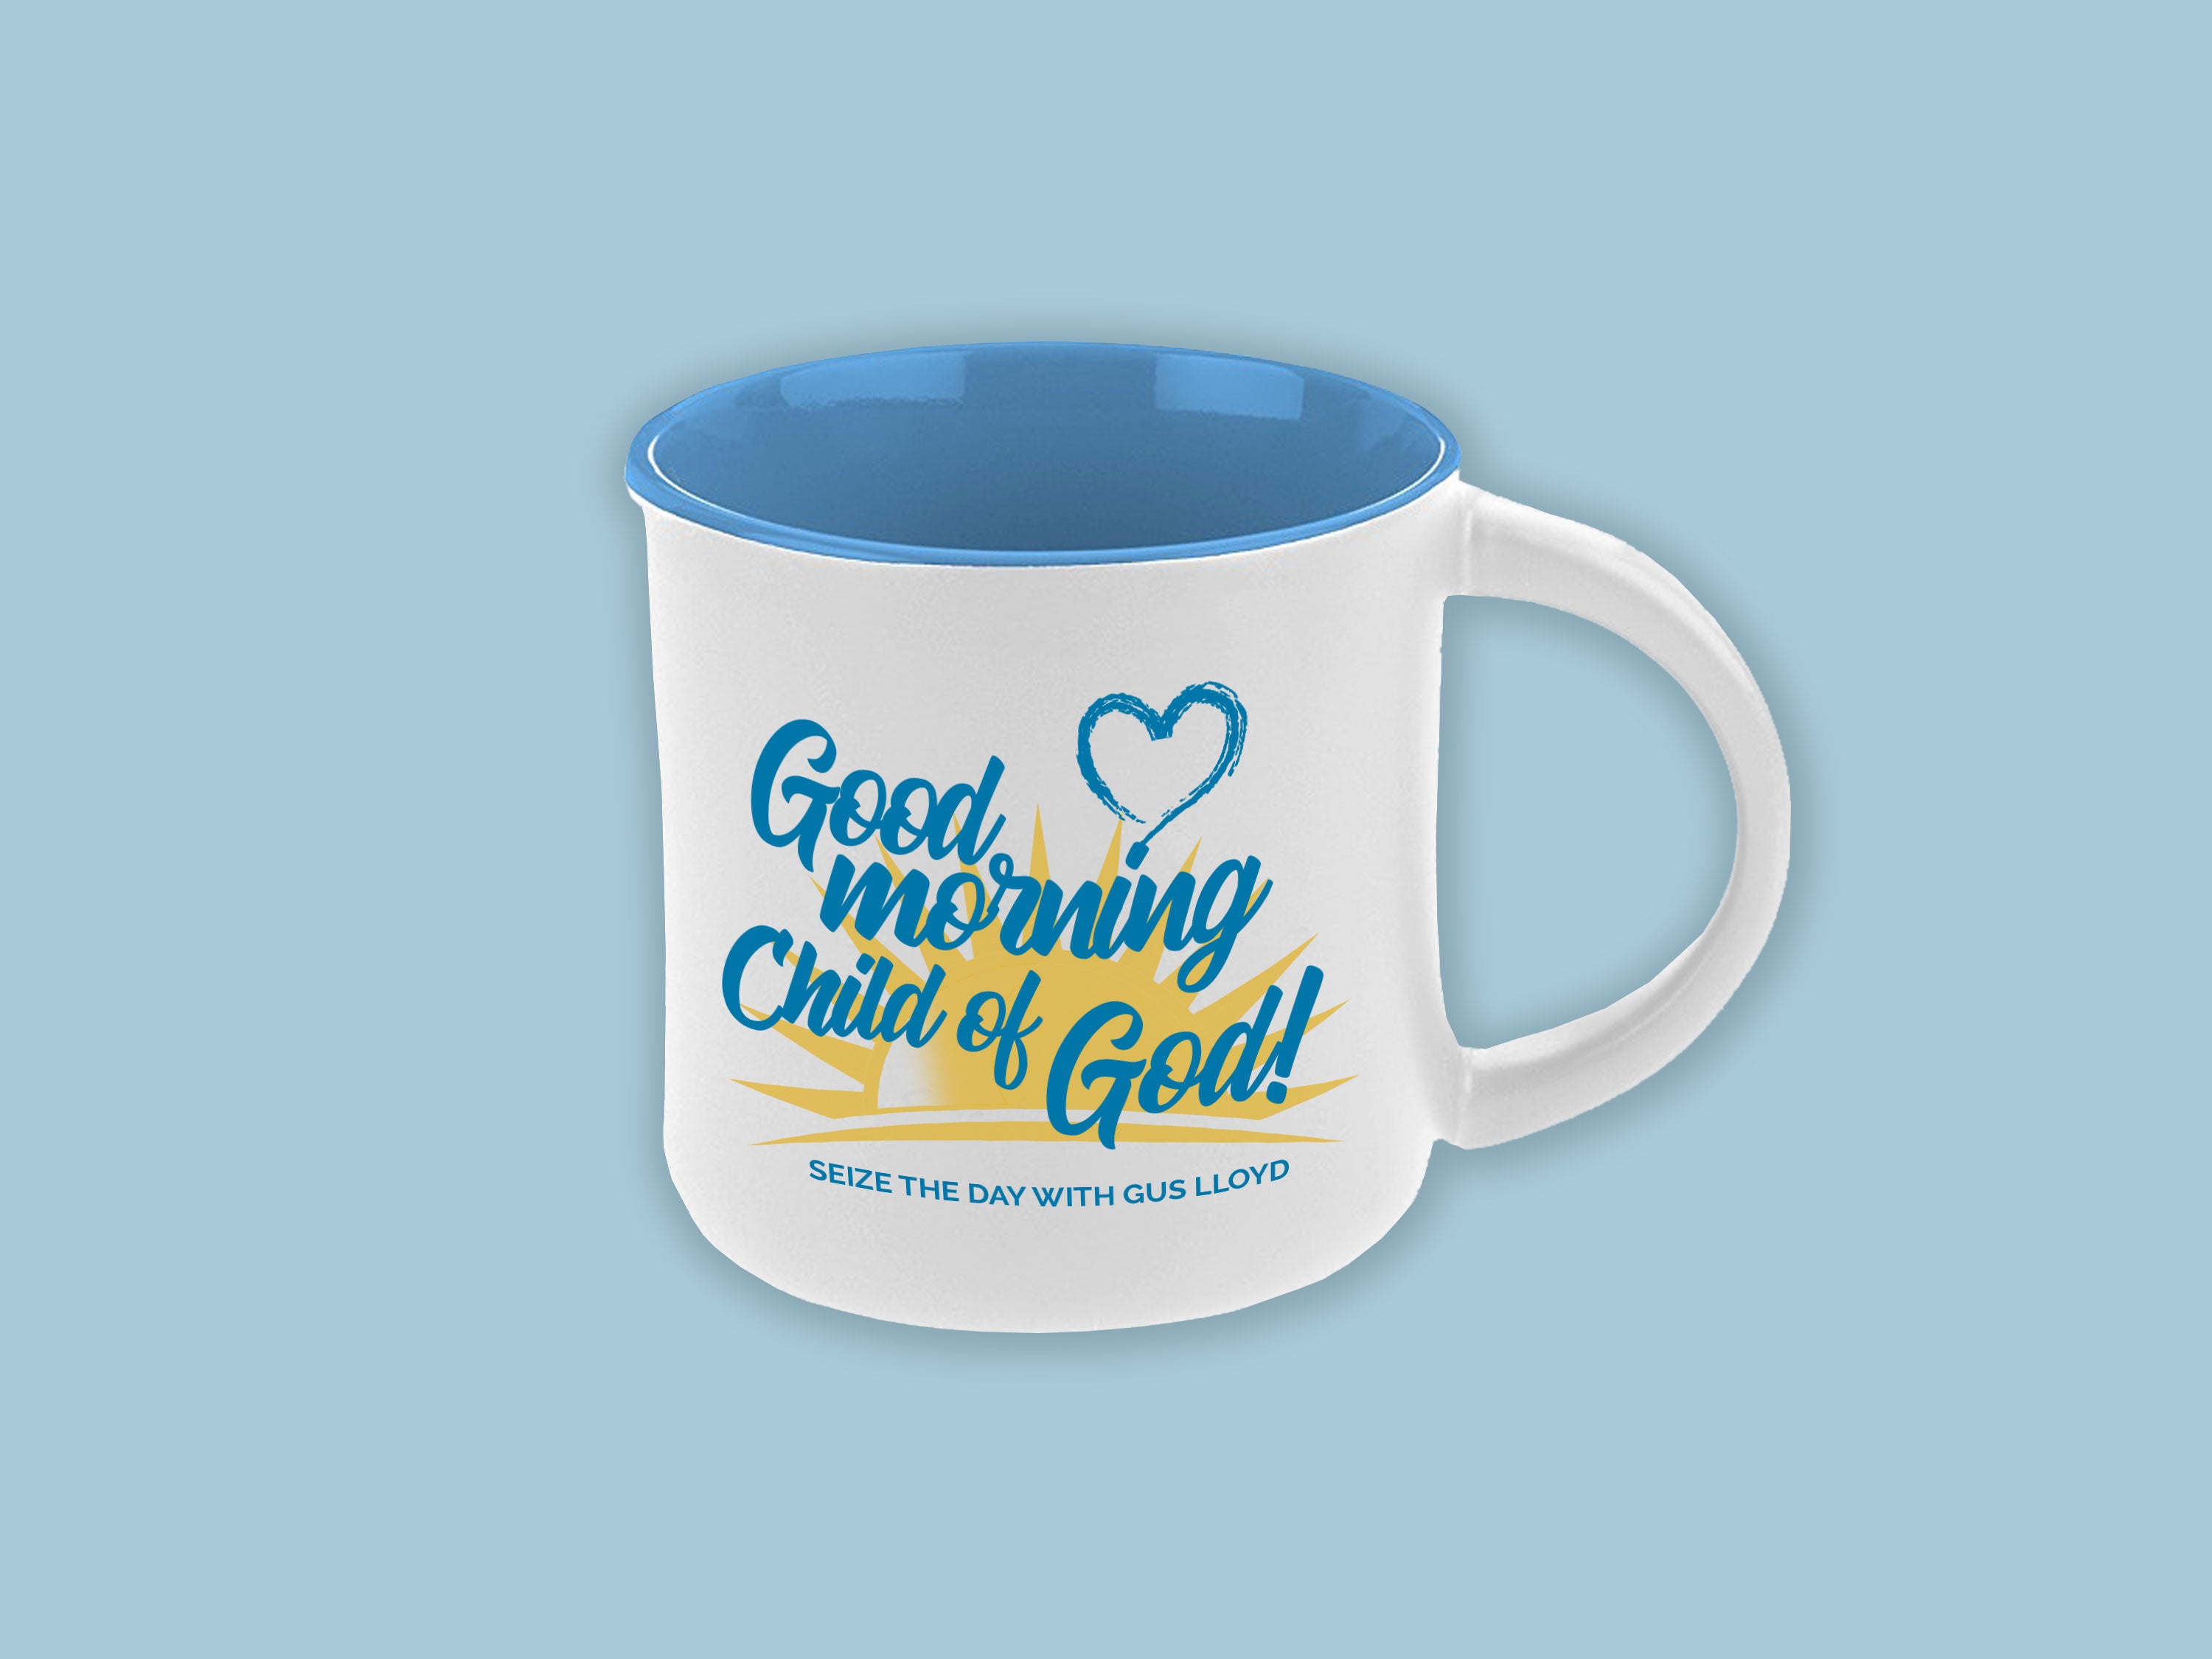 Good Morning Child of God Tumbler – Gus Lloyd